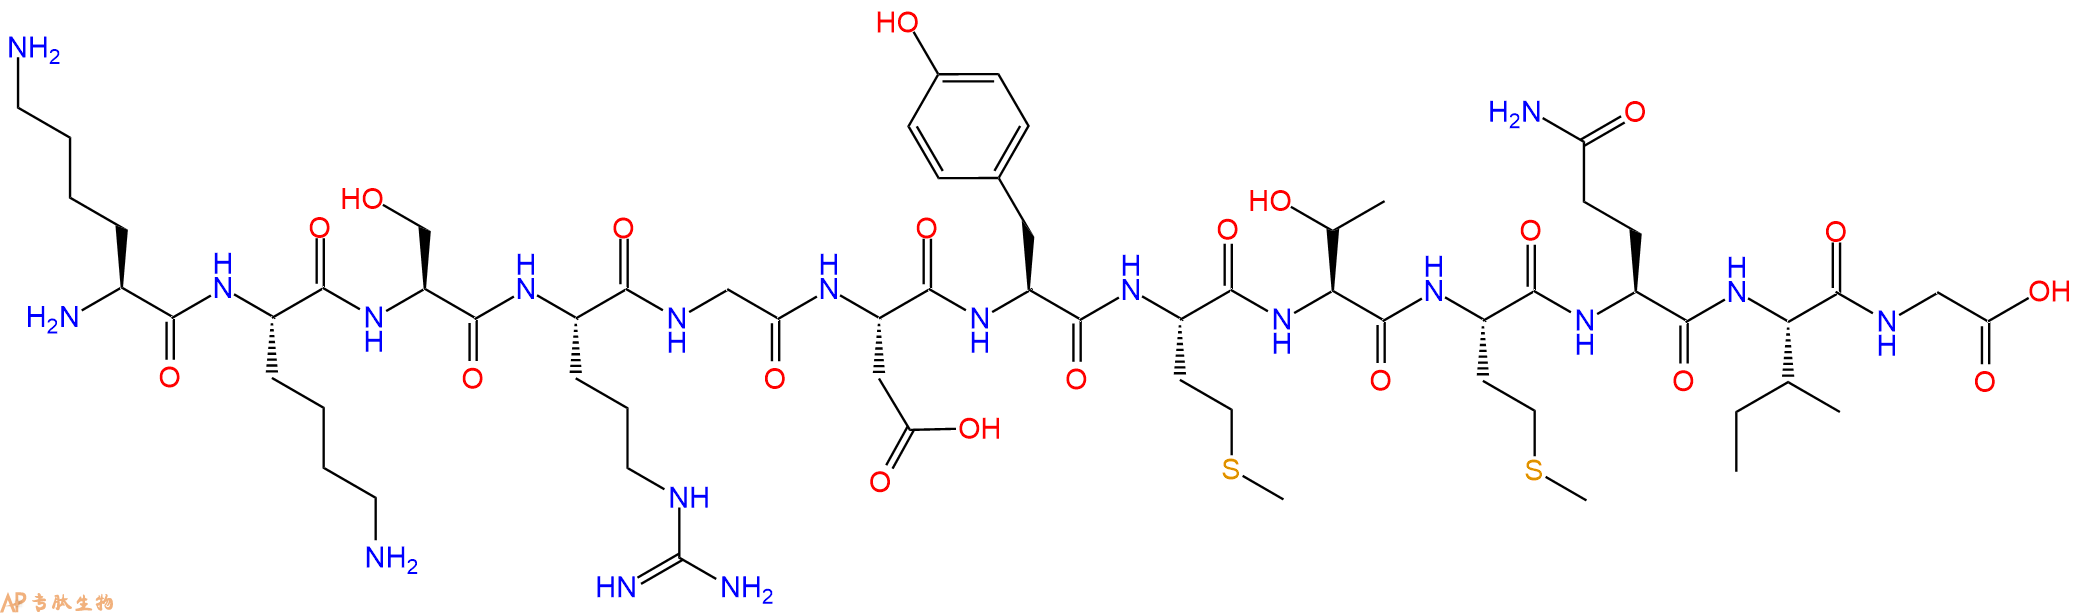 专肽生物产品酶底物肽Axltide143364-95-8